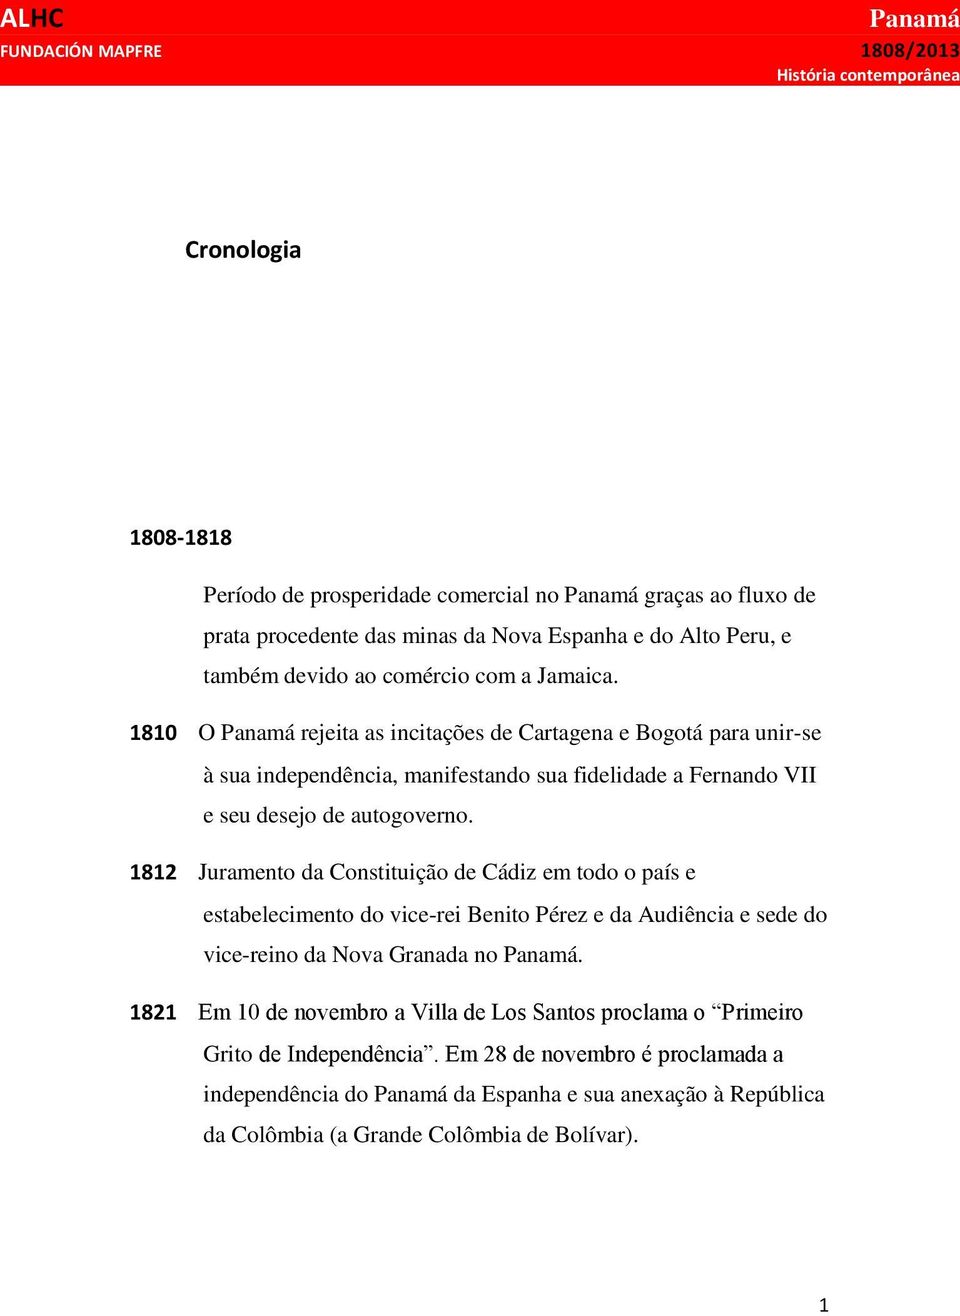 1812 Juramento da Constituição de Cádiz em todo o país e estabelecimento do vice-rei Benito Pérez e da Audiência e sede do vice-reino da Nova Granada no.